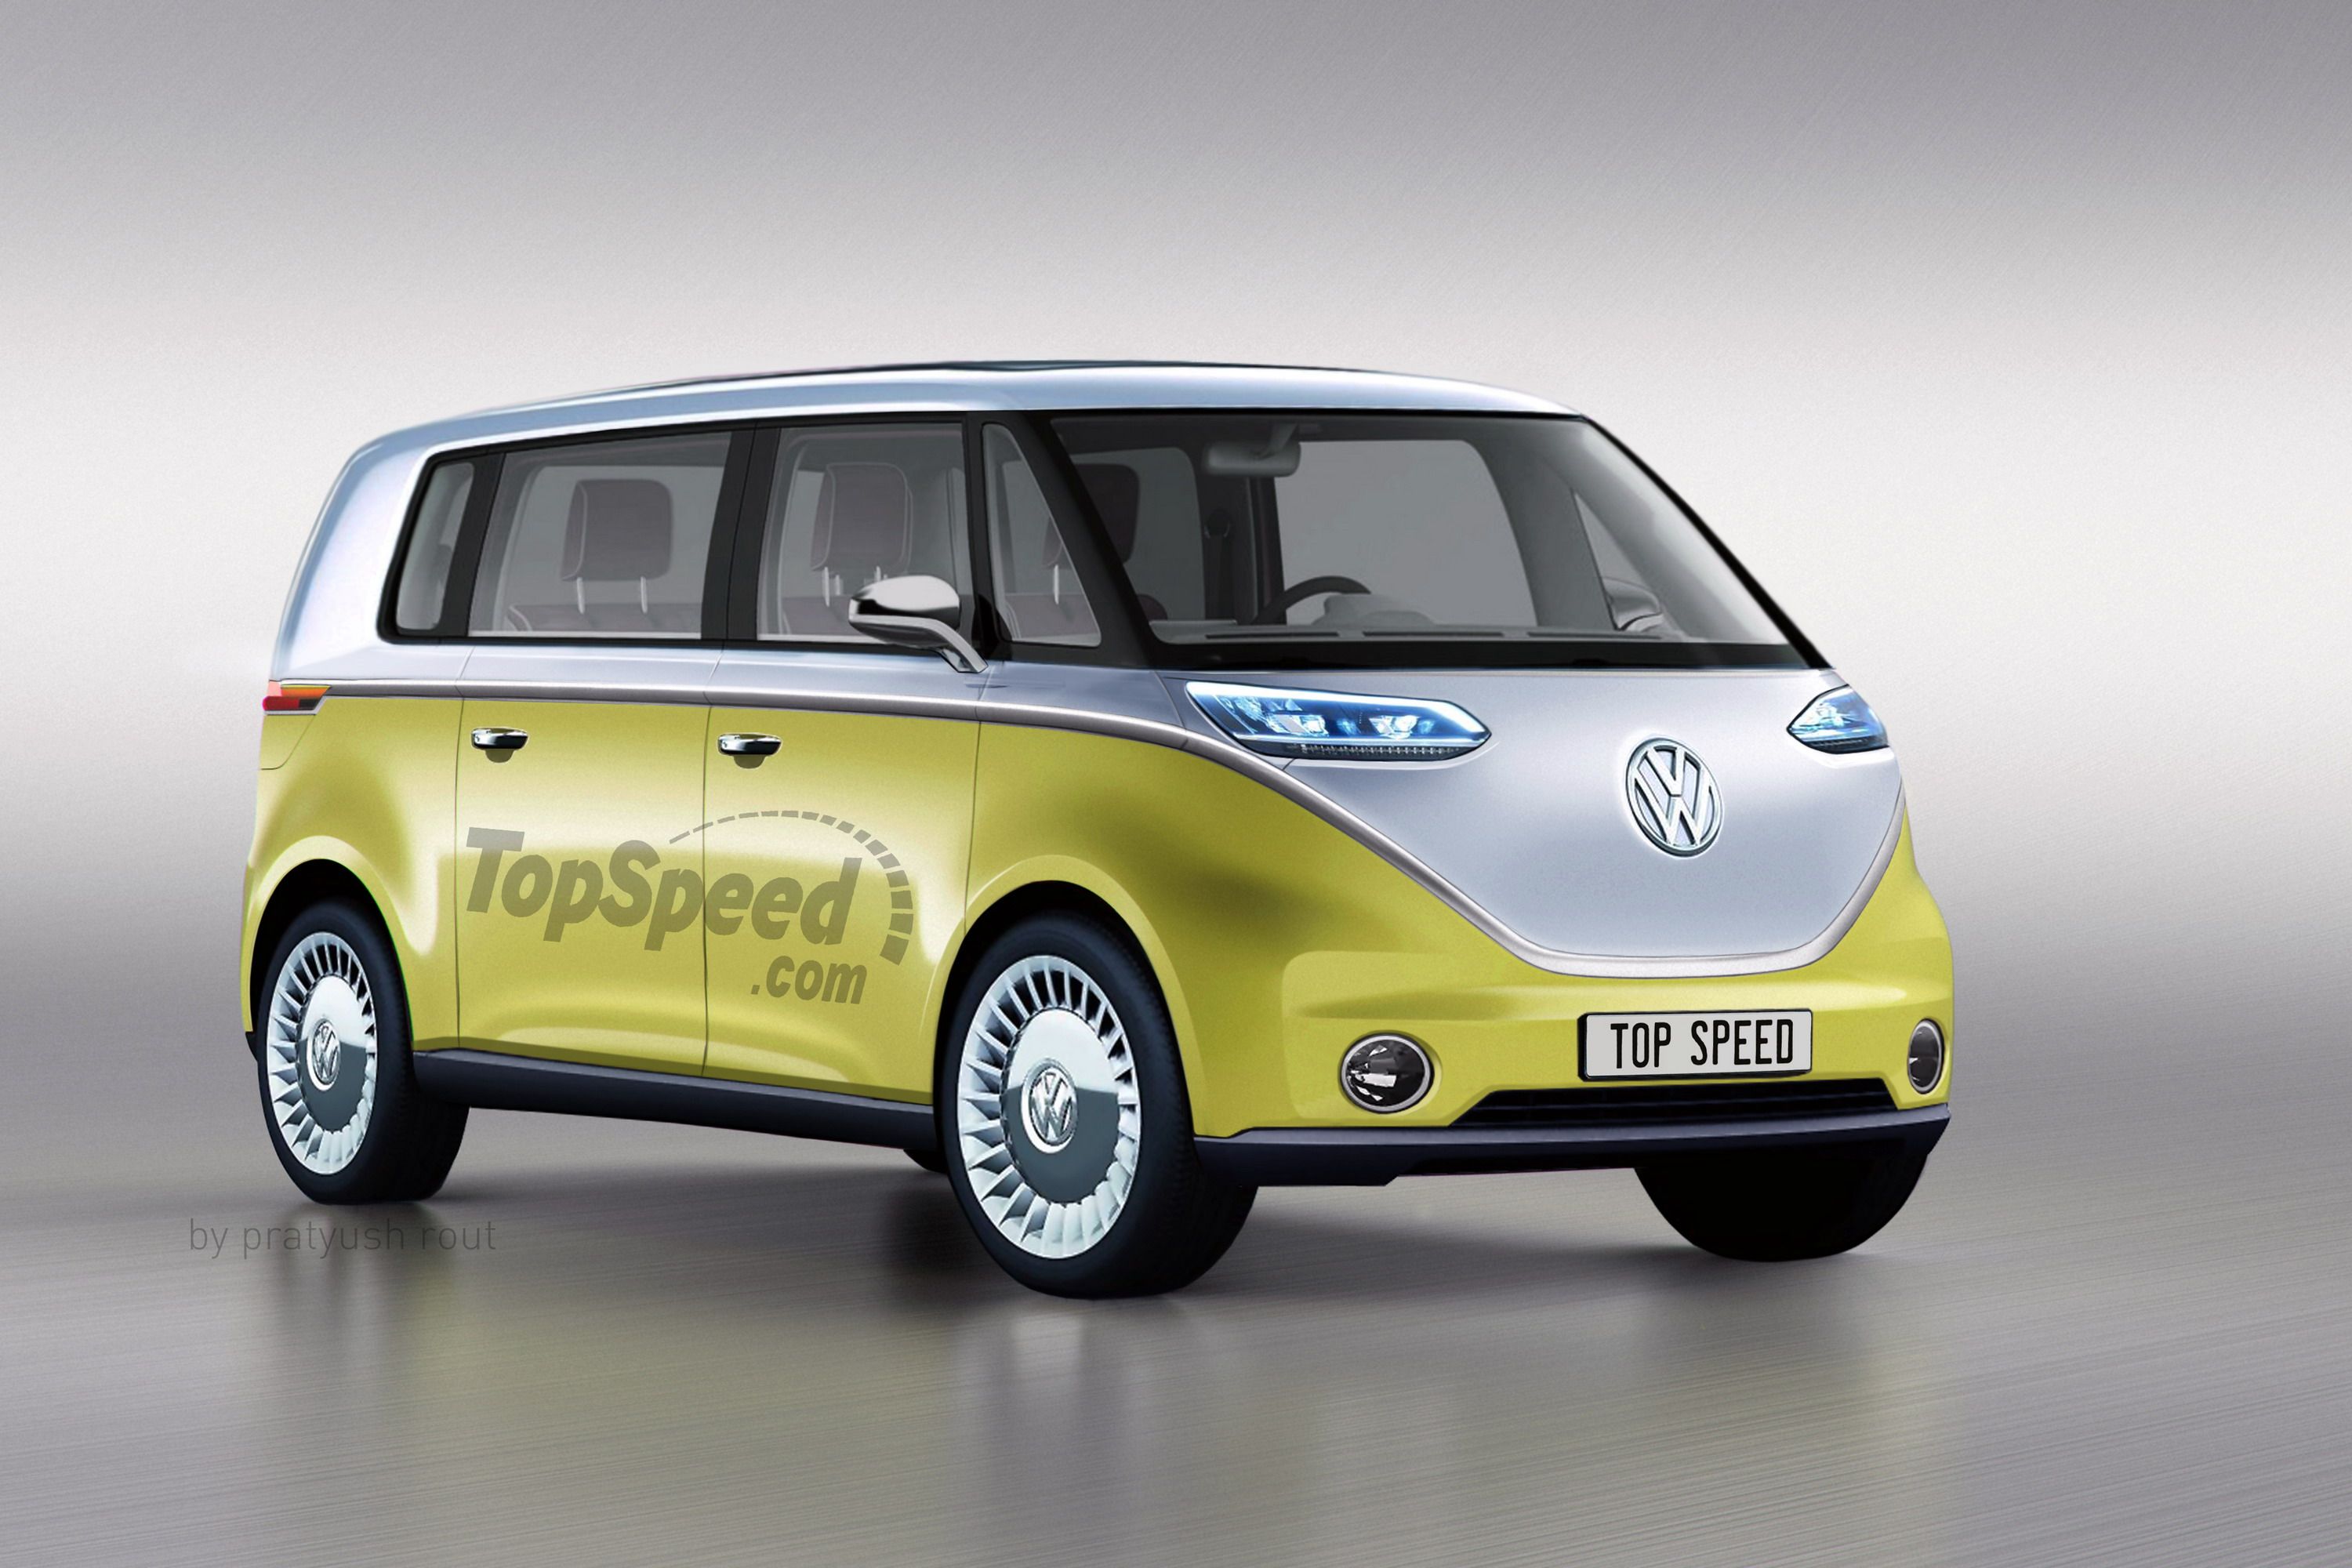 2020 Volkswagen Van